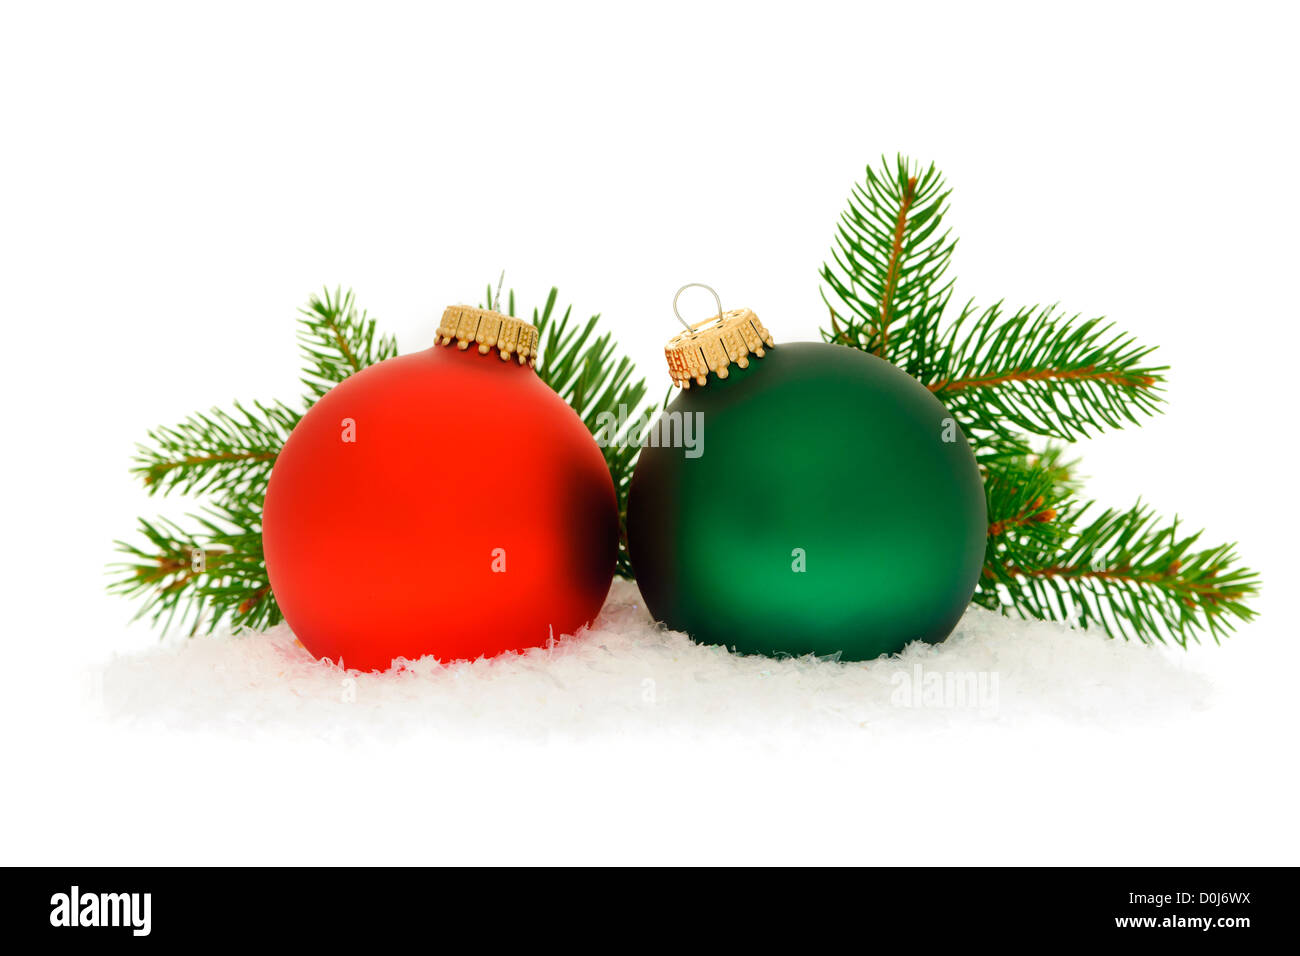 Albero Di Natale Bianco Rosso E Verde.Rosso E Verde Le Palle Di Natale Con Abete Rosso Di Ramo Di Albero Isolato Su Sfondo Bianco Foto Stock Alamy